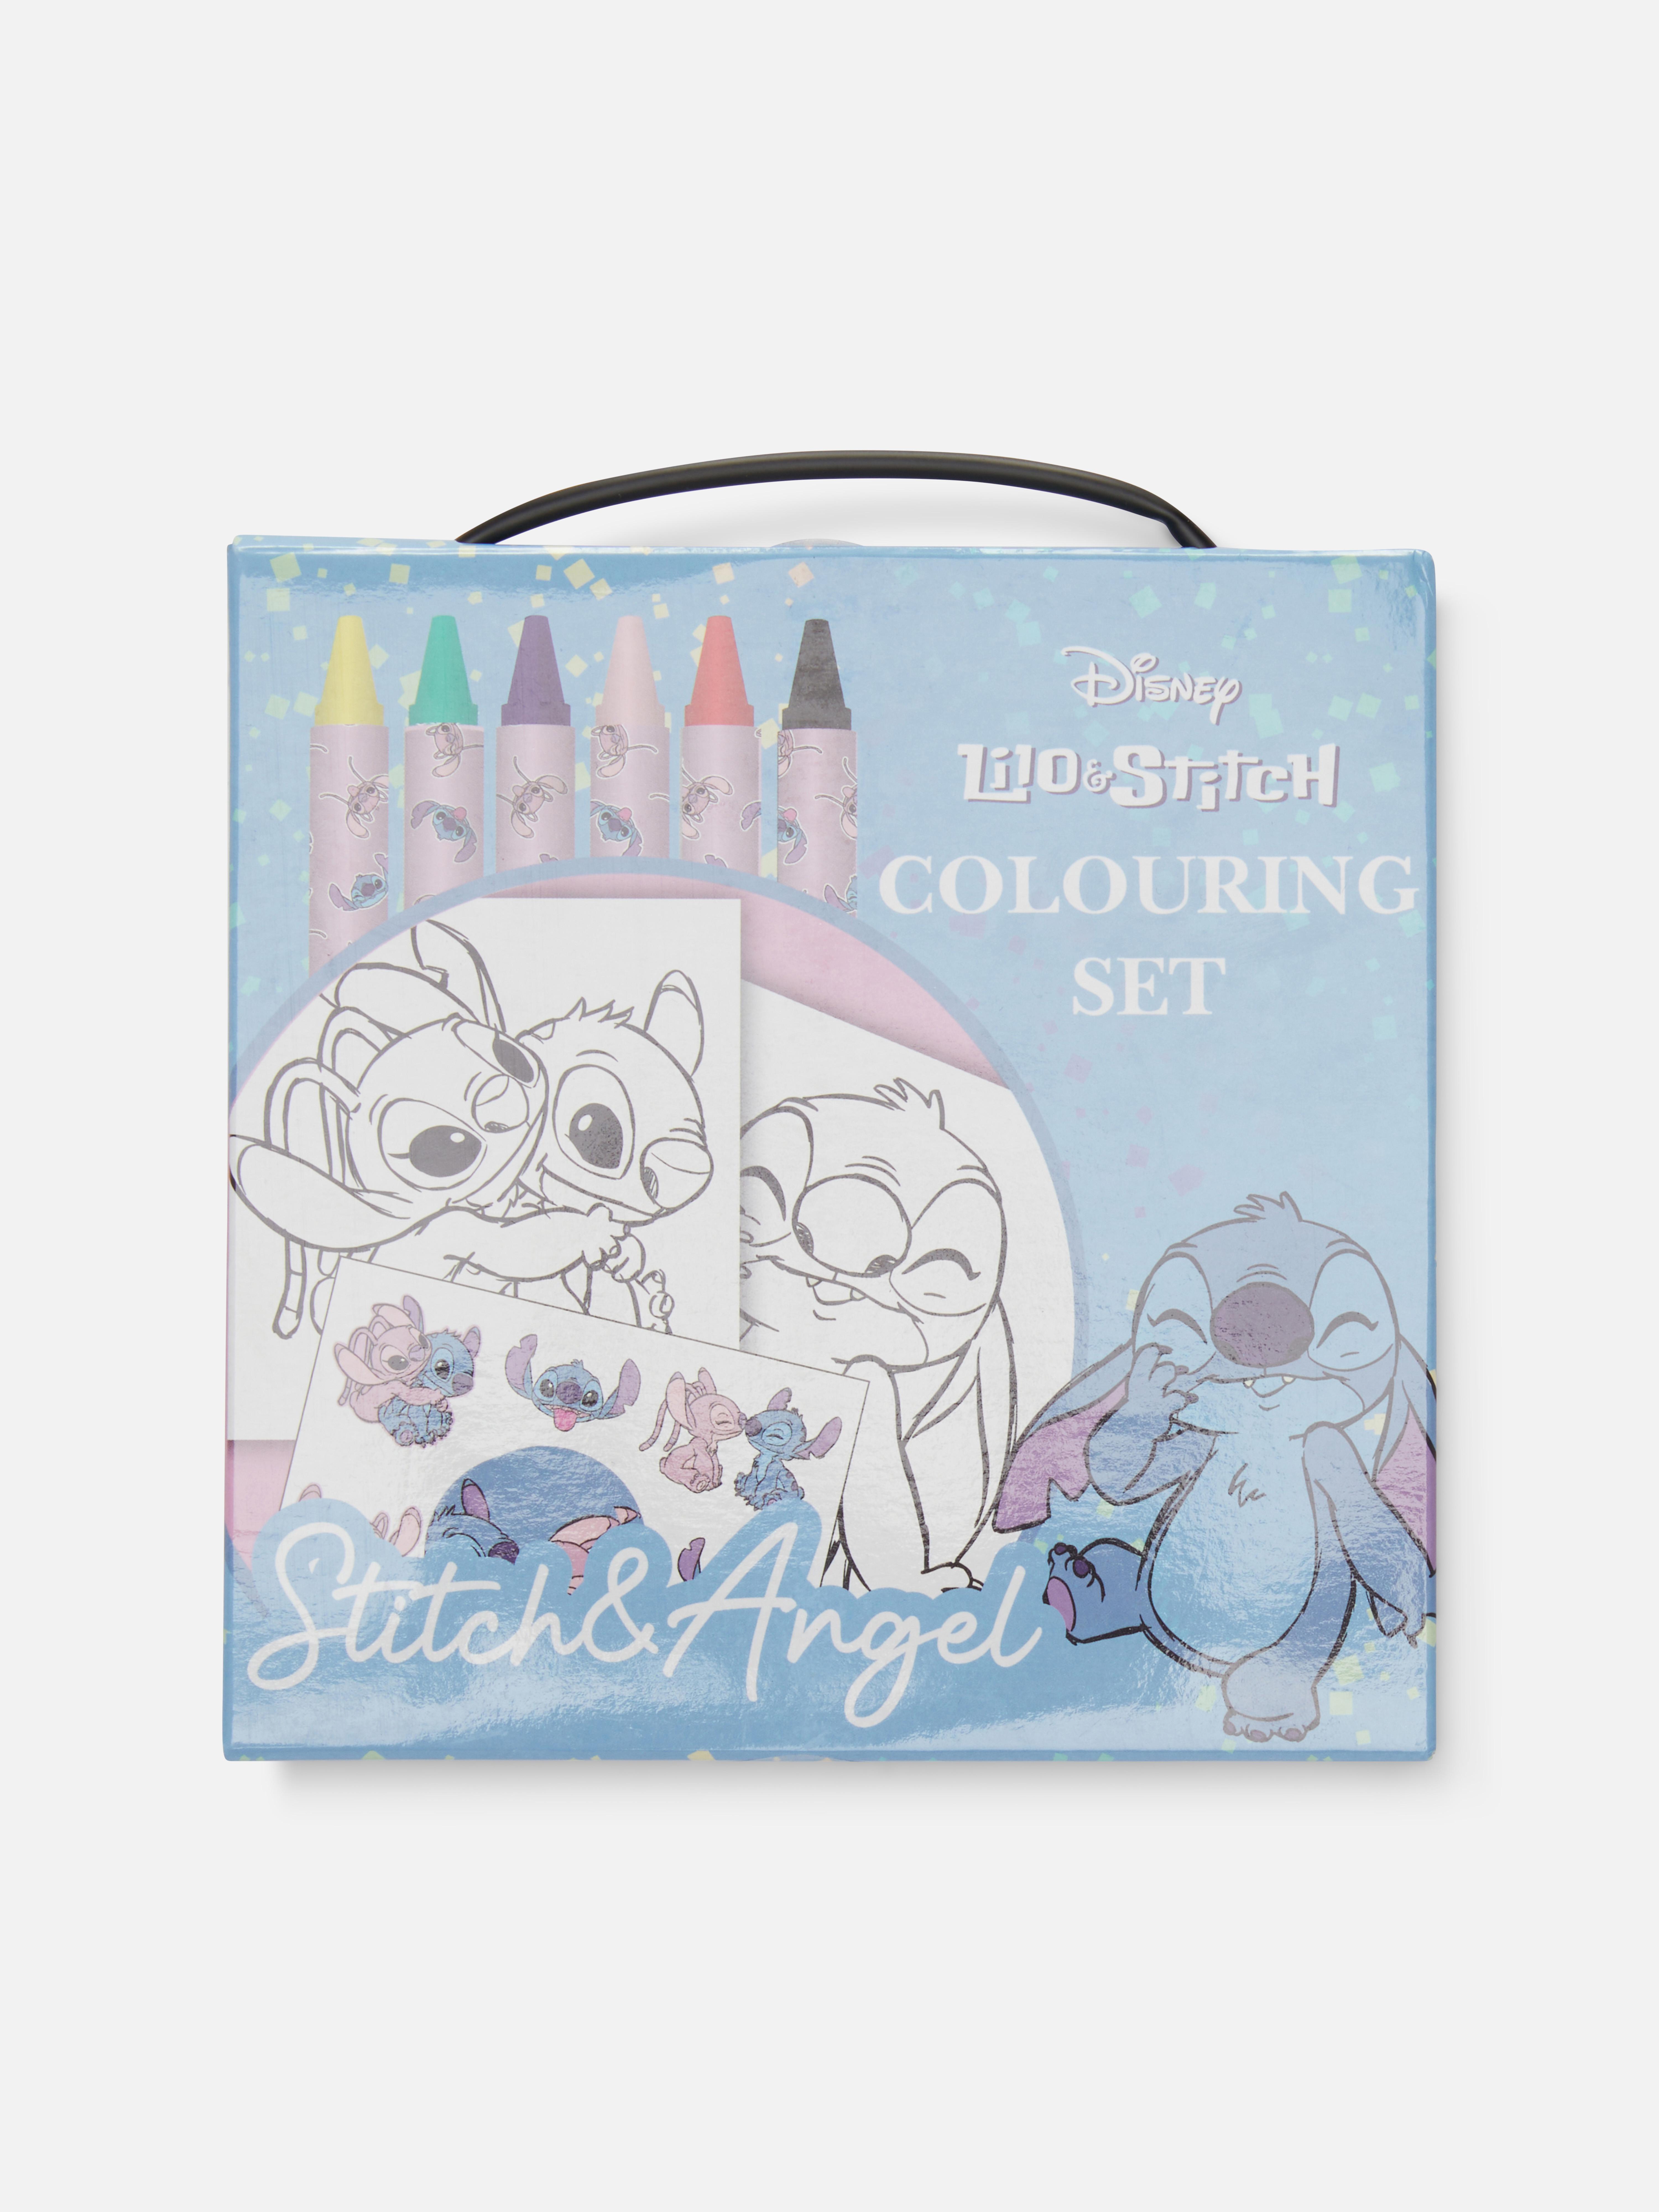 Disney’s Lilo & Stitch Colouring Set